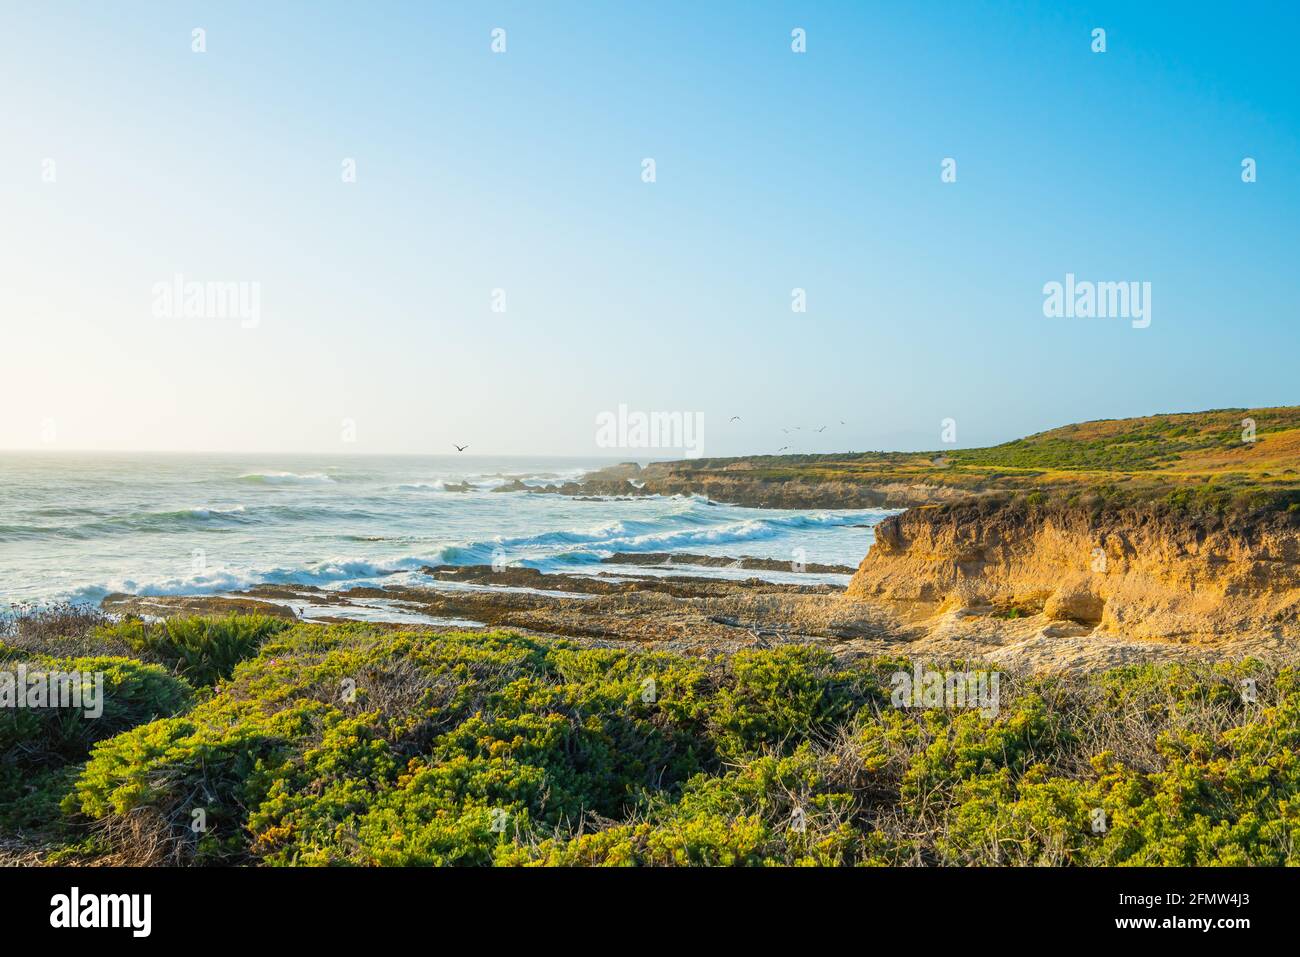 Paesaggio costiero, spiaggia rocciosa, orizzonte sul mare, e cielo blu chiaro. Foto Stock